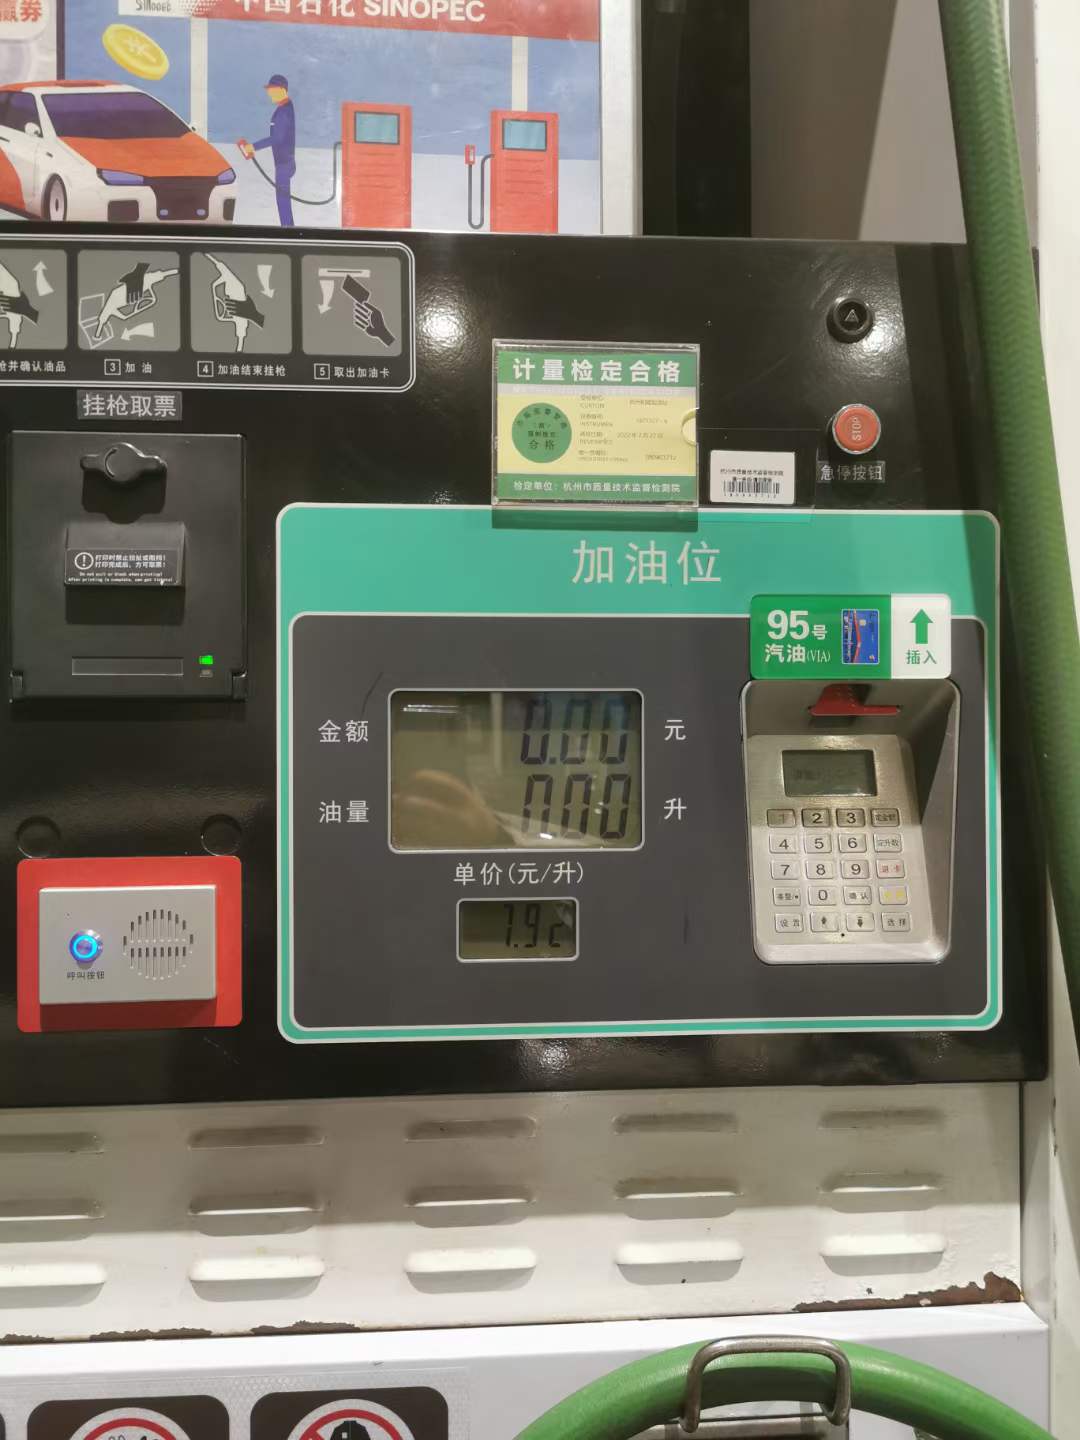 深圳92号汽油每升上调0.23元 车主加满一箱将多花11.5元